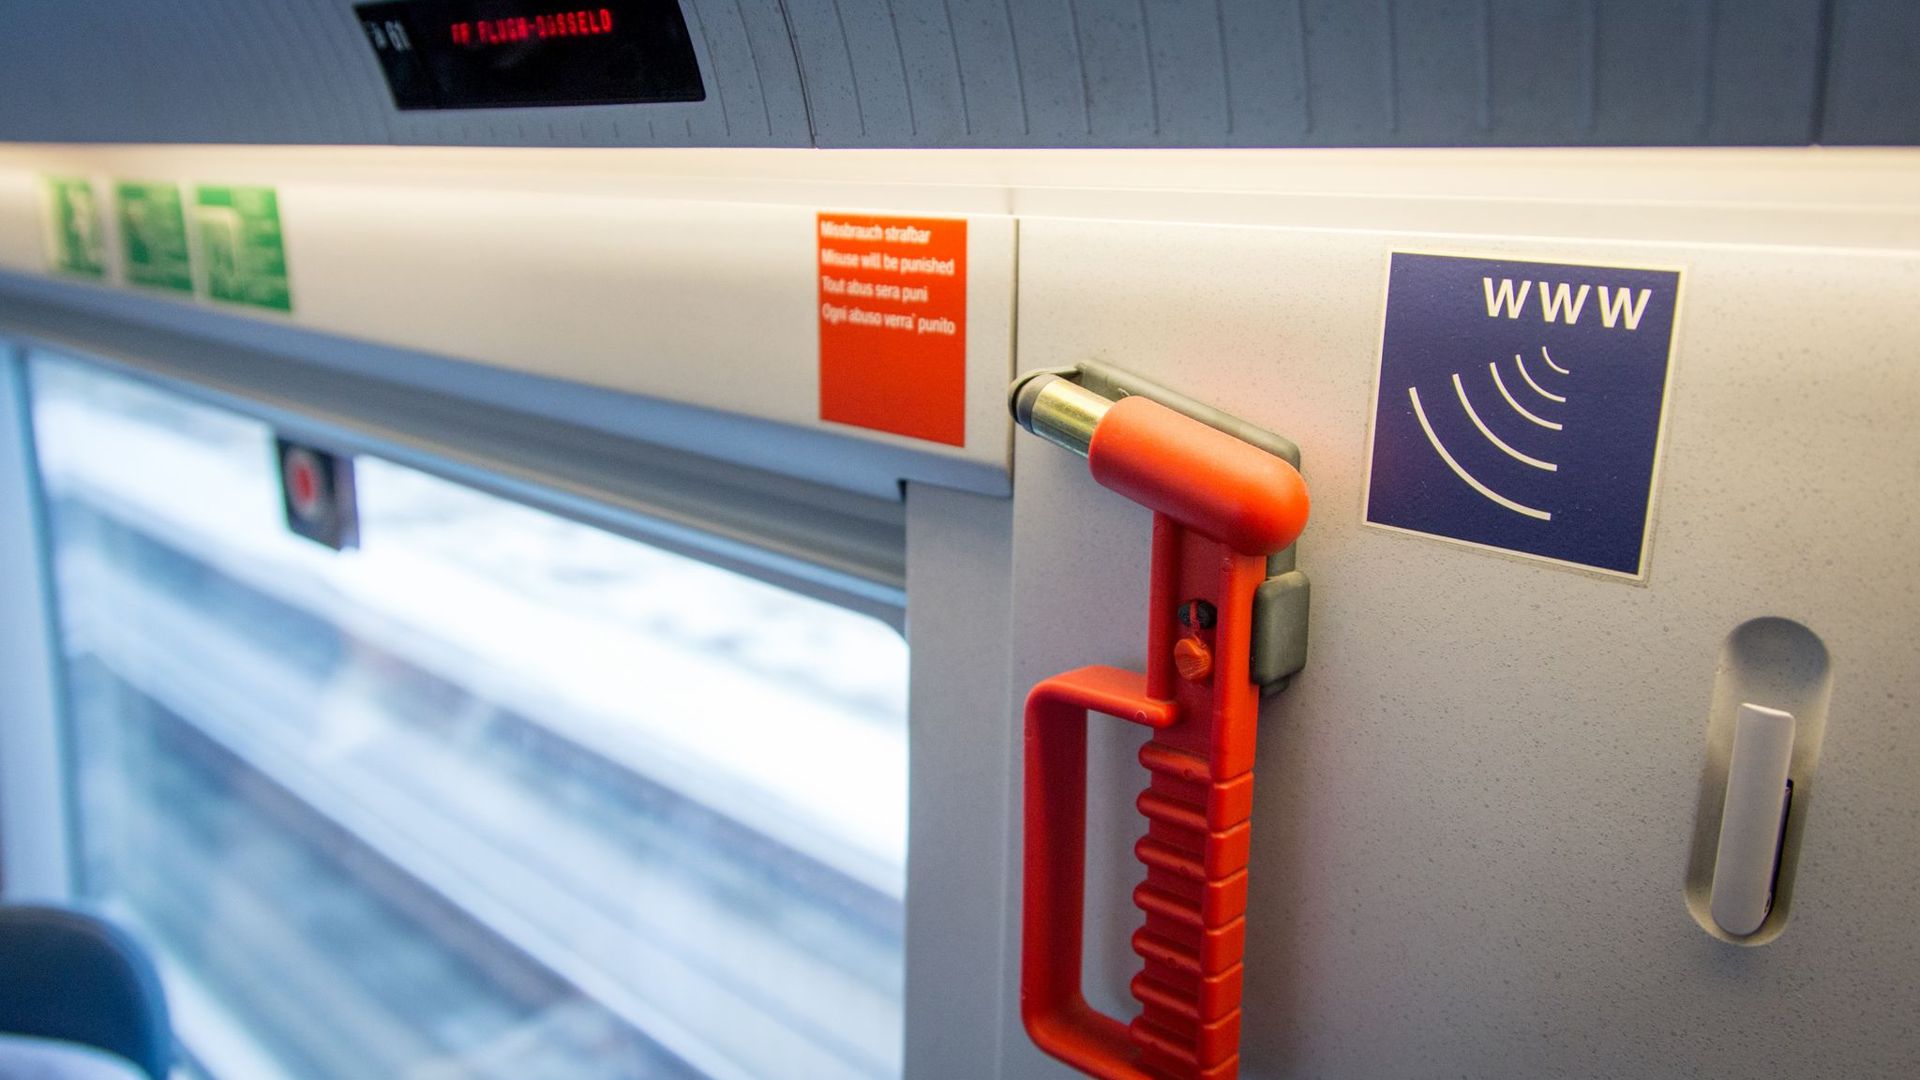 Ein Piktogramm deutet in einem Abteil eines Zuges der Deutschen Bahn auf Internetempfang hin.